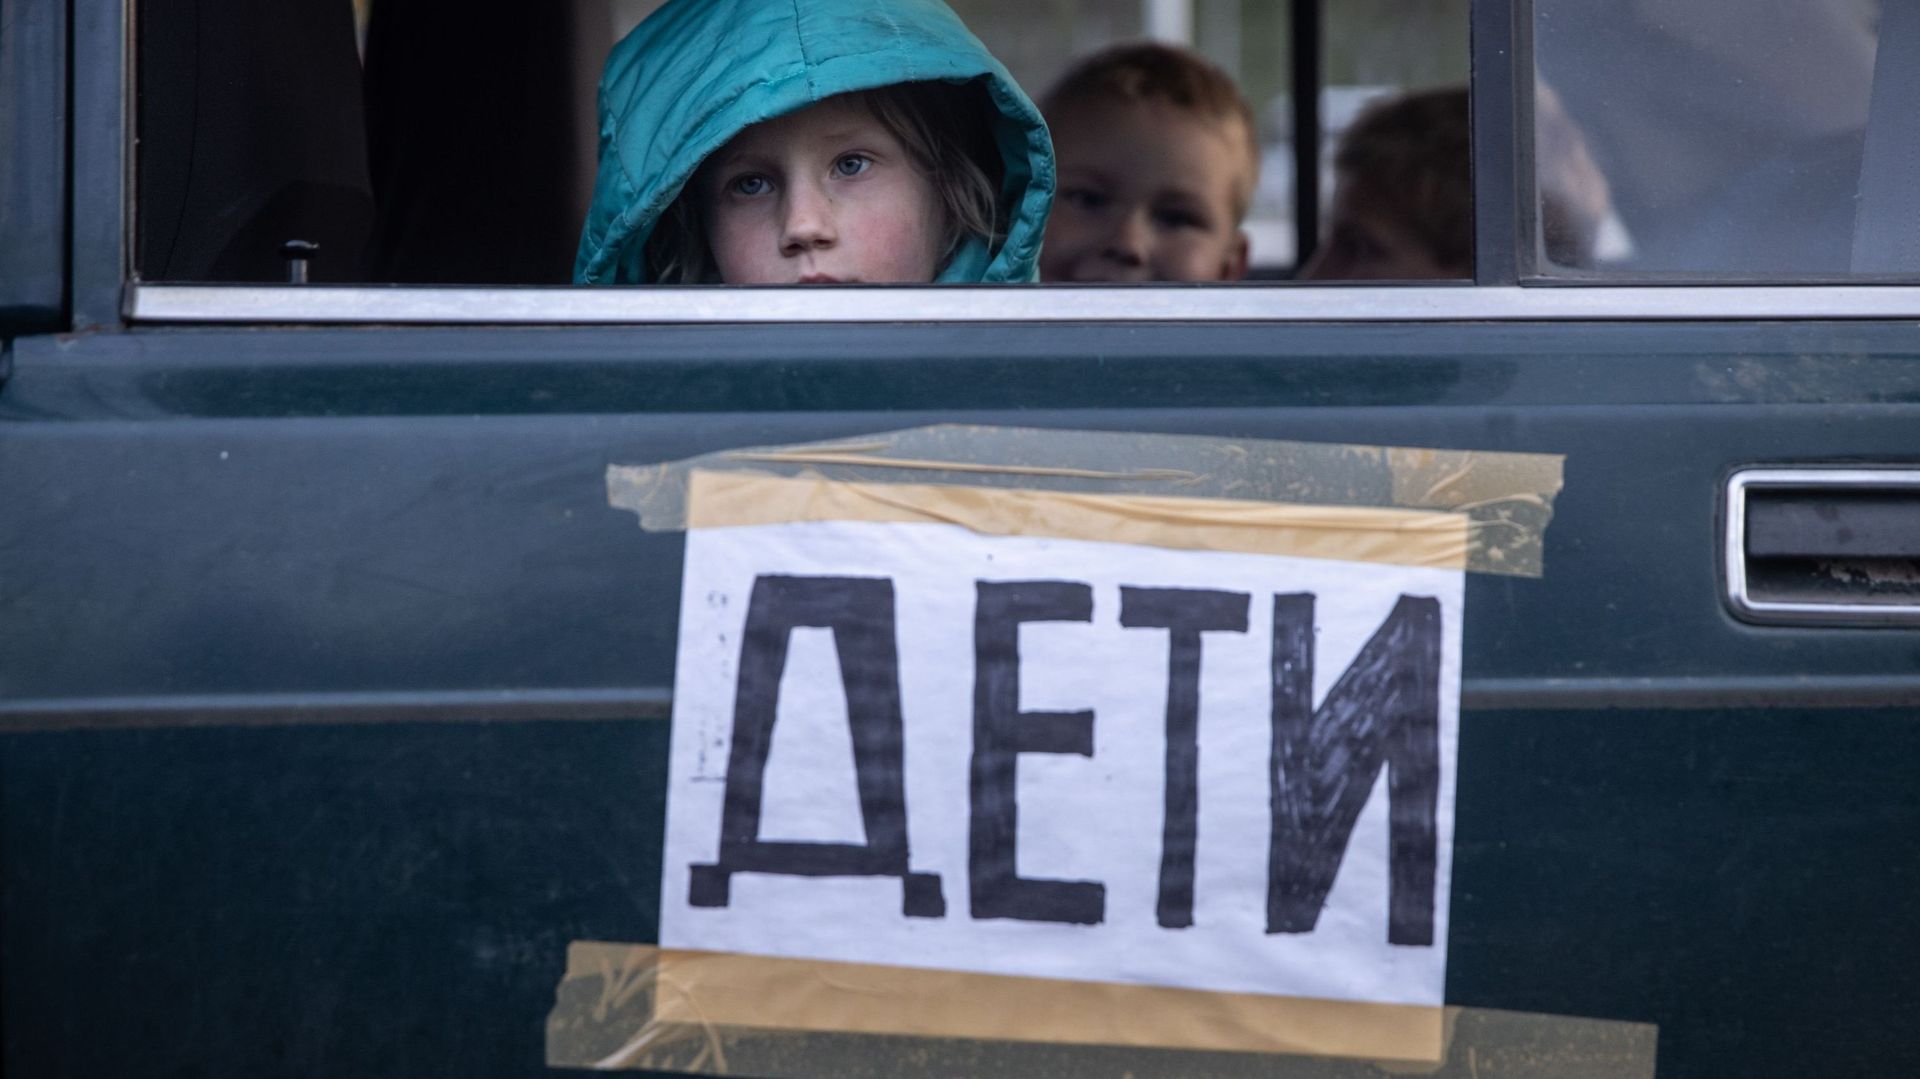 Un garçon de Mariupol regarde par la fenêtre de la voiture de sa famille après être arrivé à un point d’évacuation pour les personnes fuyant Mariupol, Melitopol et les villes environnantes sous contrôle russe, le 02 mai 2022 à Zaporizhzhia, en Ukraine.